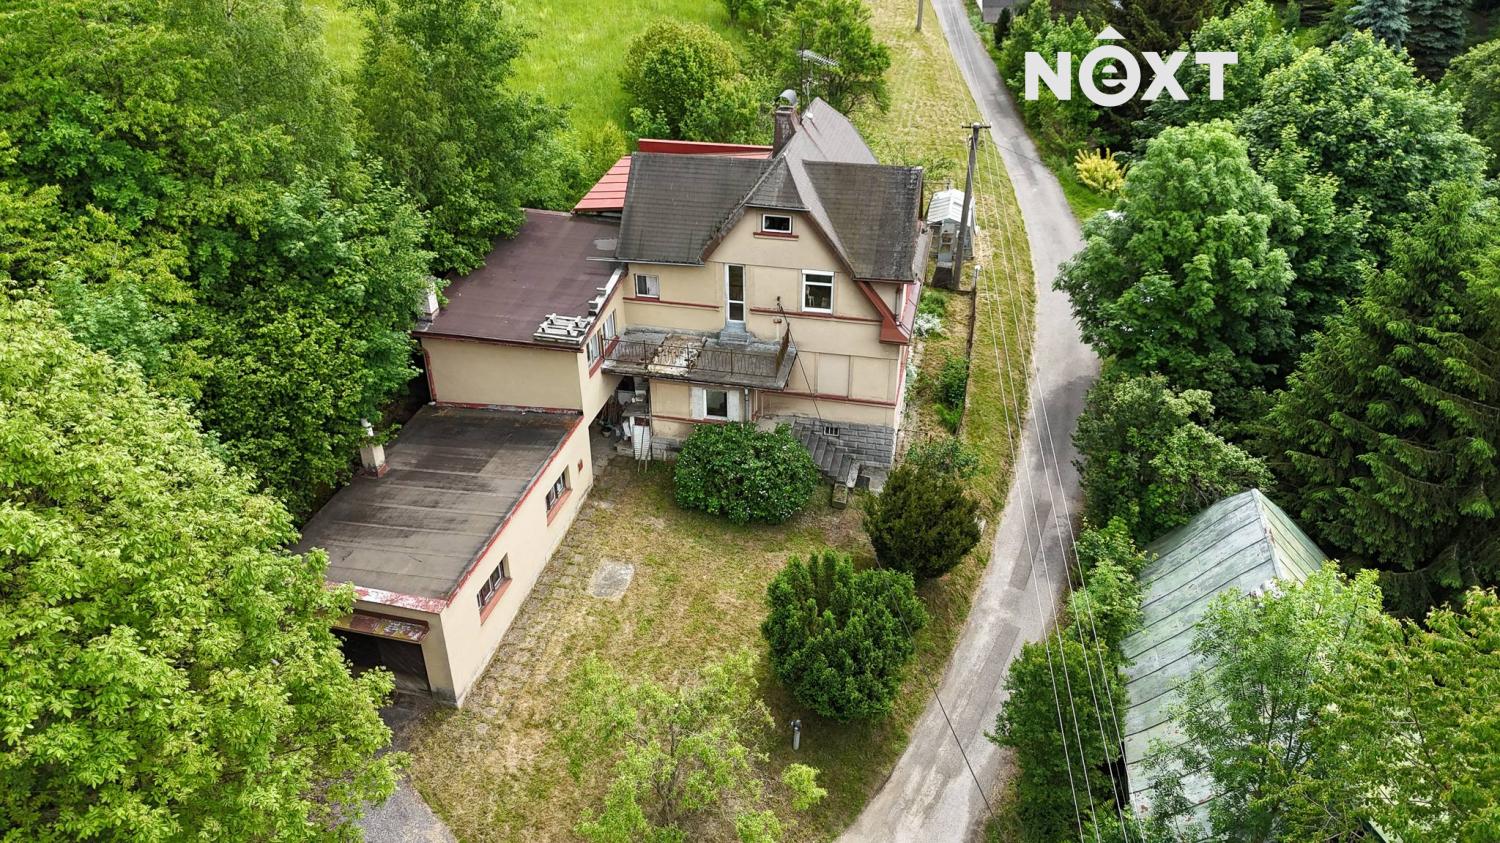 Prodej Rodinný dům, 200㎡|Liberecký kraj, Semily, Bozkov, 202, 51213